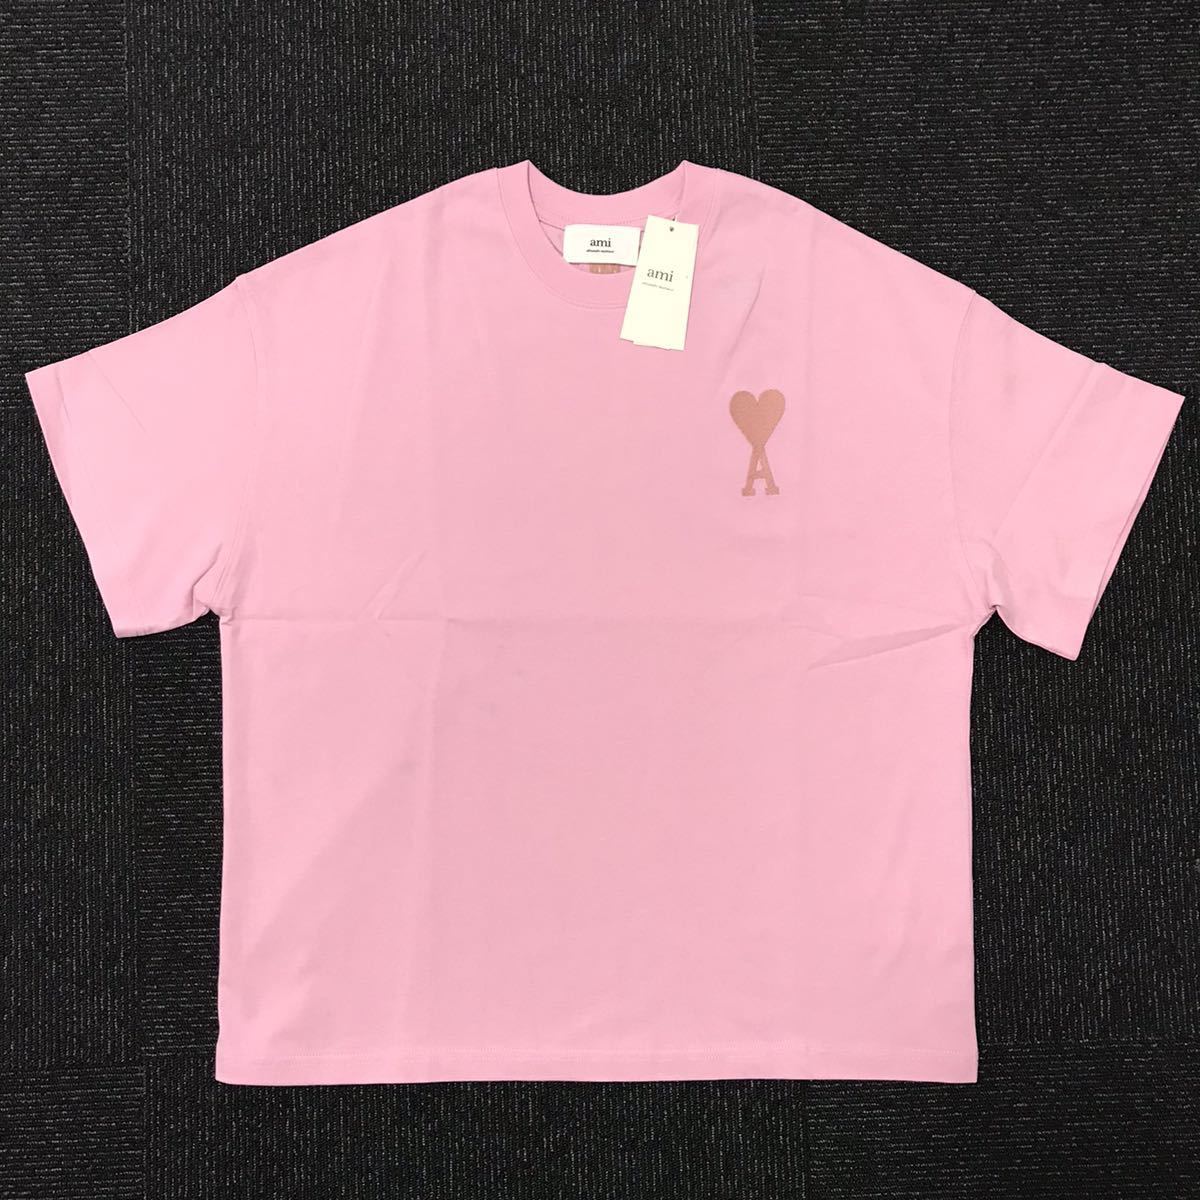 限定価格セール！ サイズM トップス ピンク色系 半袖Tシャツ amiparis